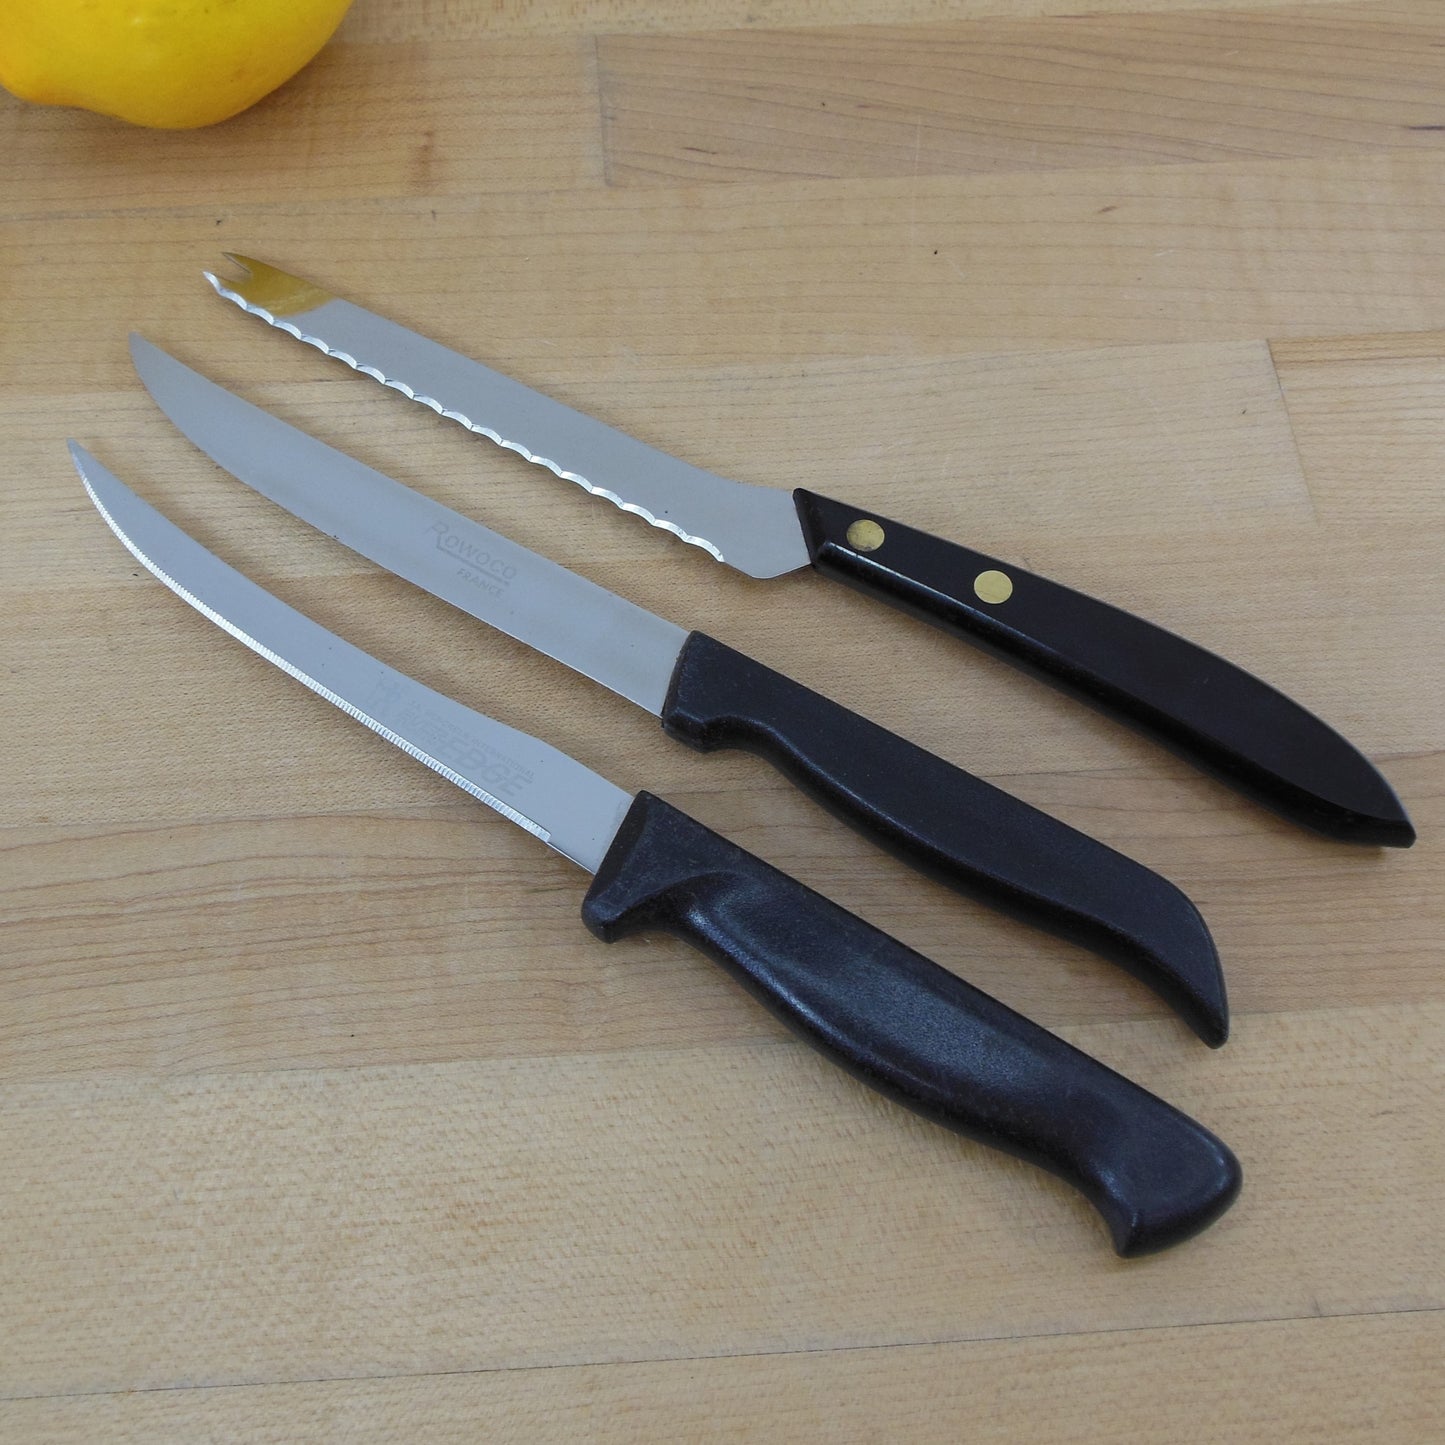 Stainless Kitchen Knife Trio - Henckels Tomato, Rowoco Utility, Robinson